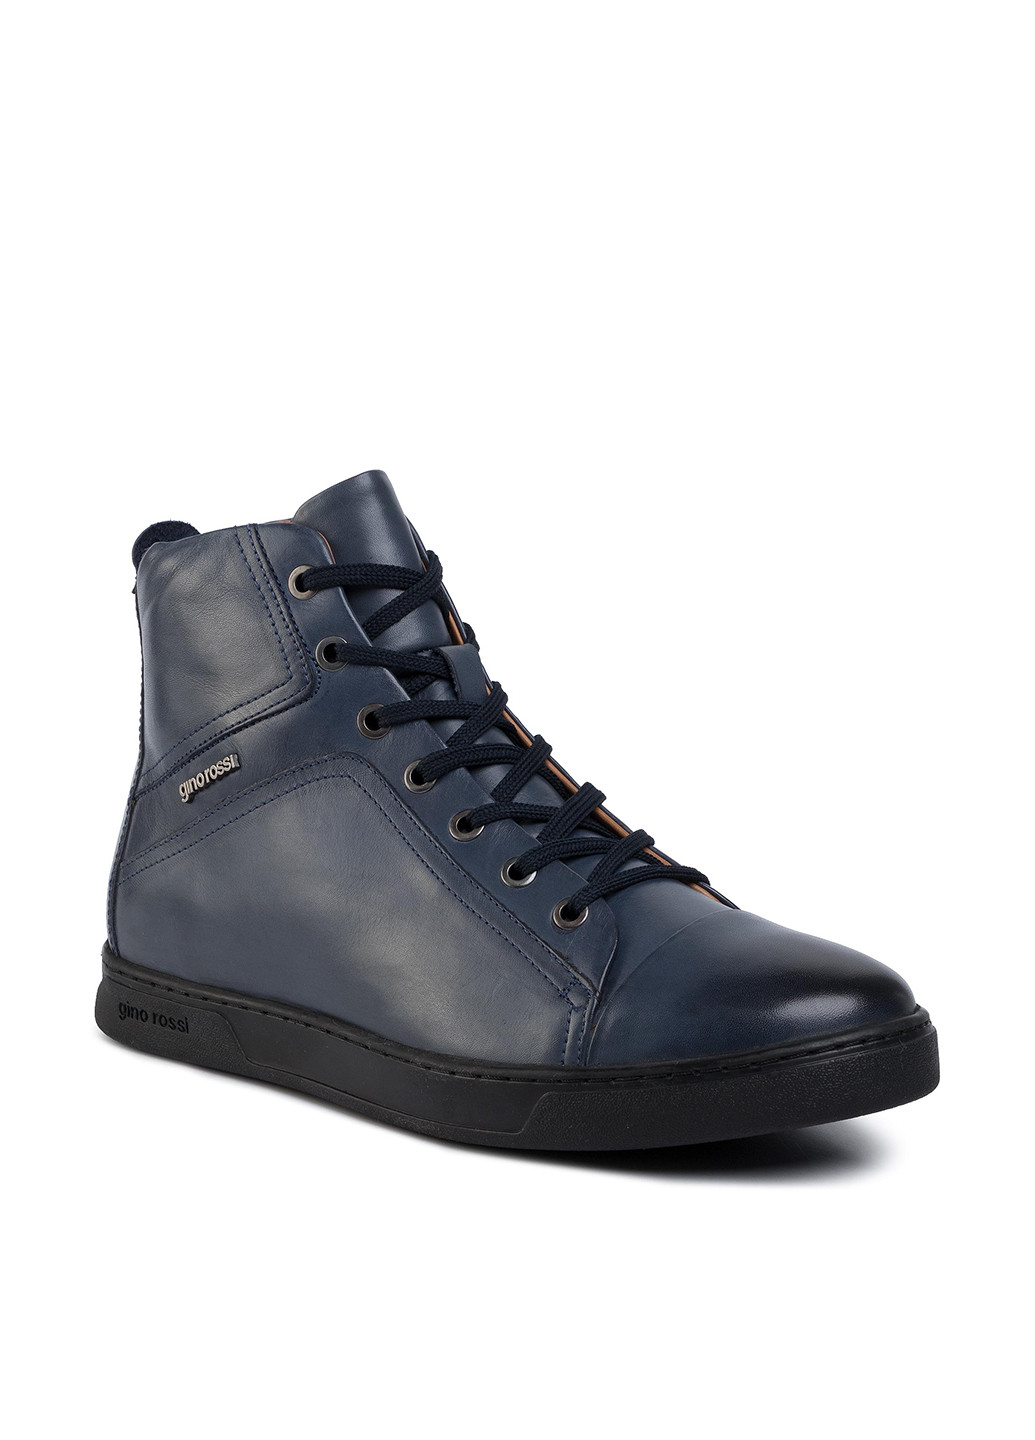 Темно-синие осенние черевики gino rossi mi08-c640-632-01 Gino Rossi